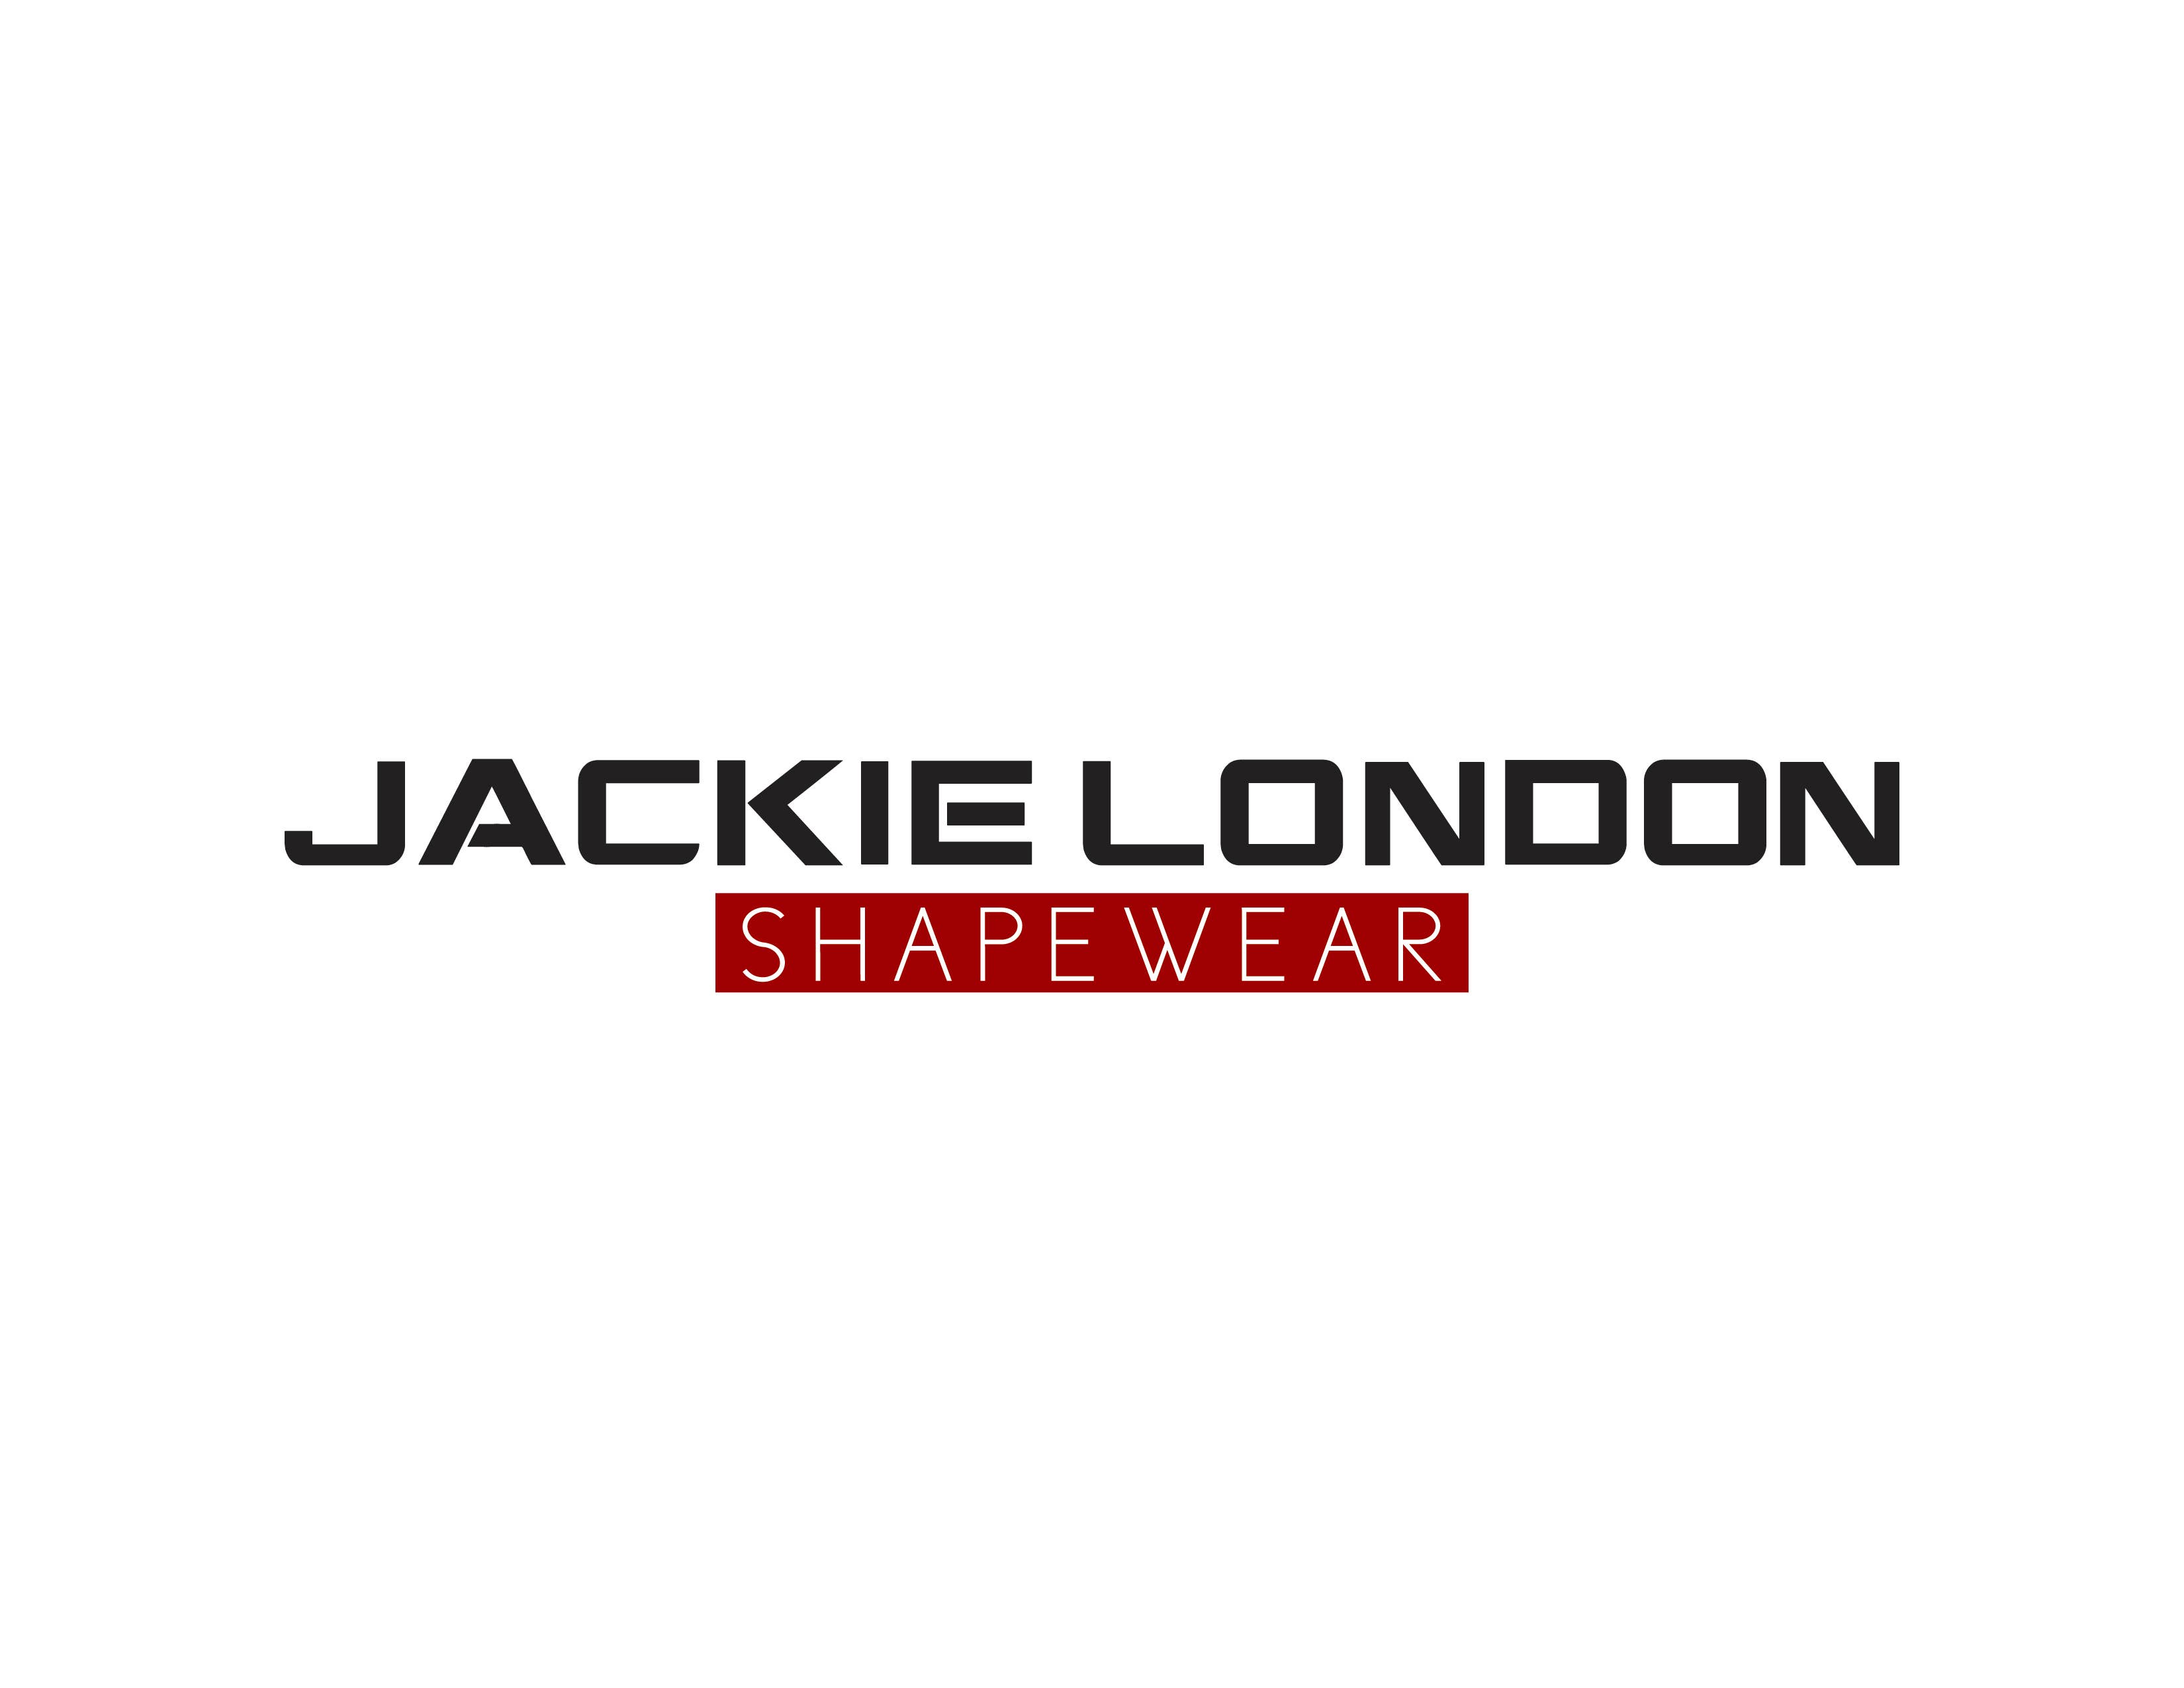 Jackie London Shapewear